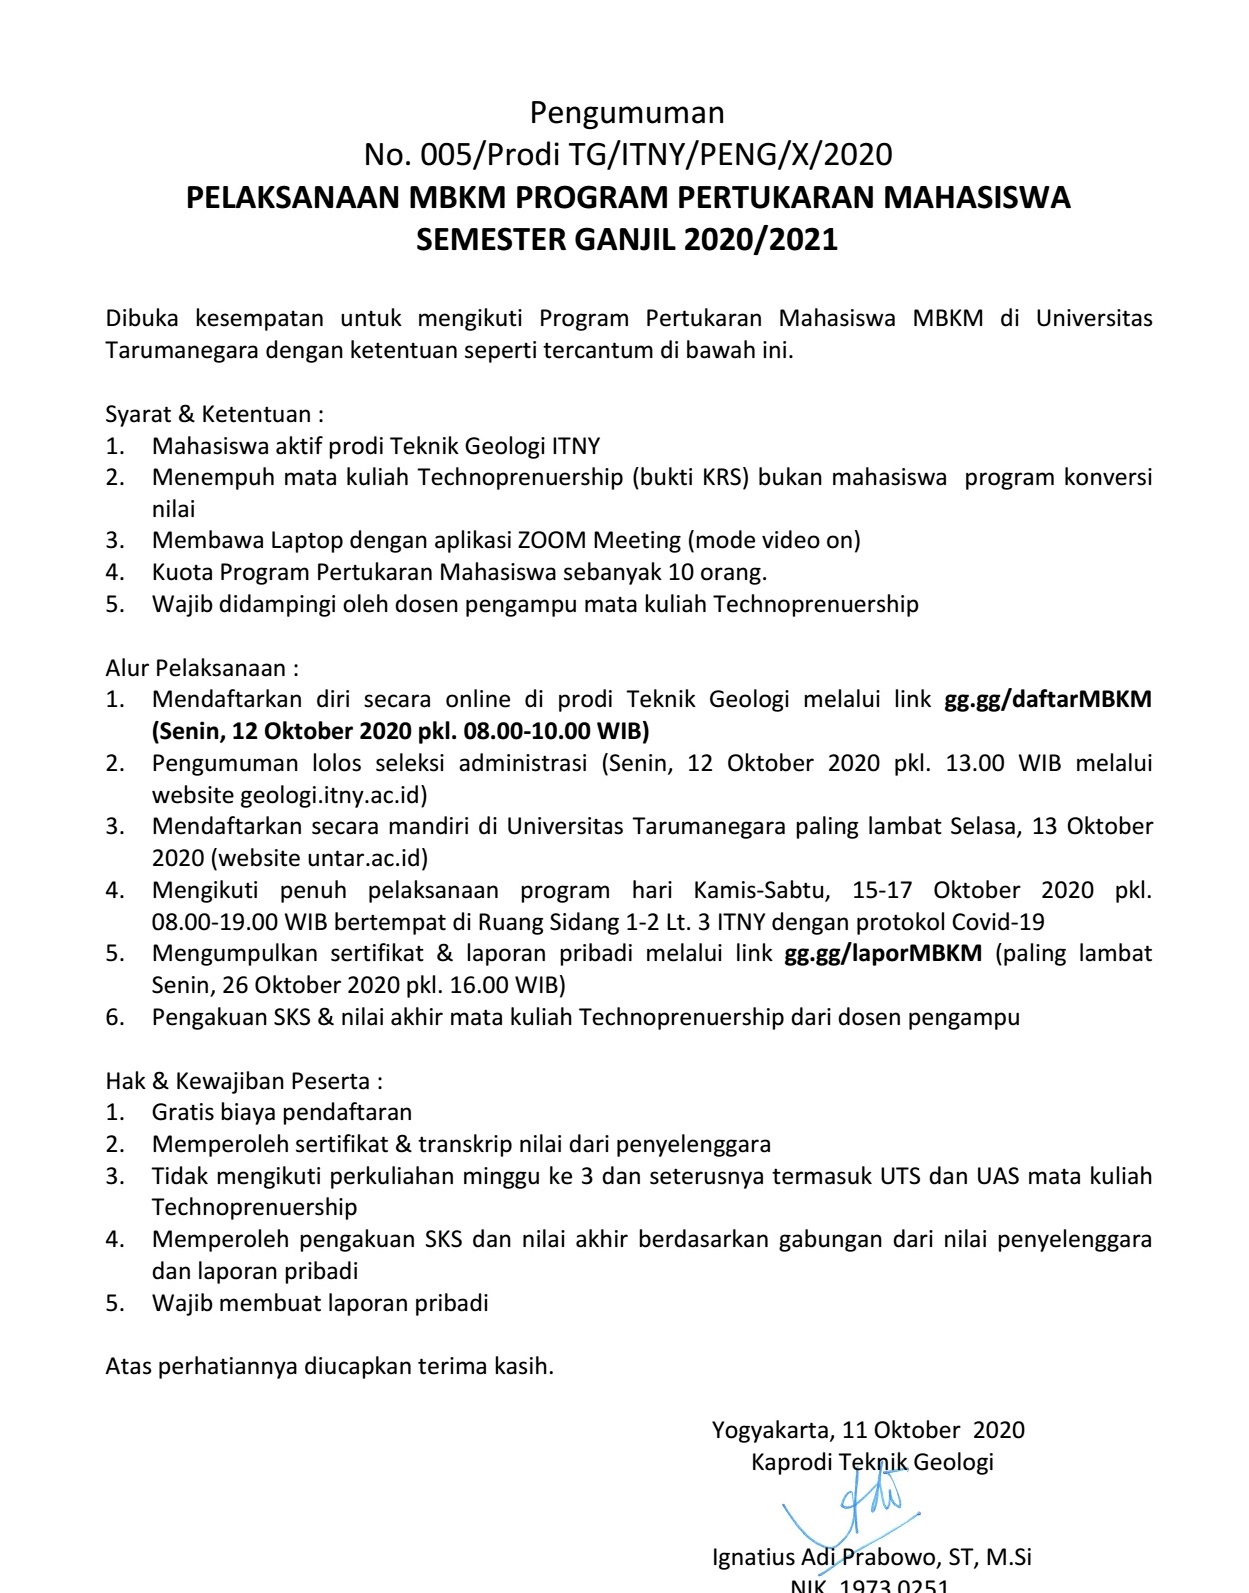 PELAKSANAAN MBKM PROGRAM PERTUKARAN MAHASISWA SEMESTER GANJIL 2020/2021